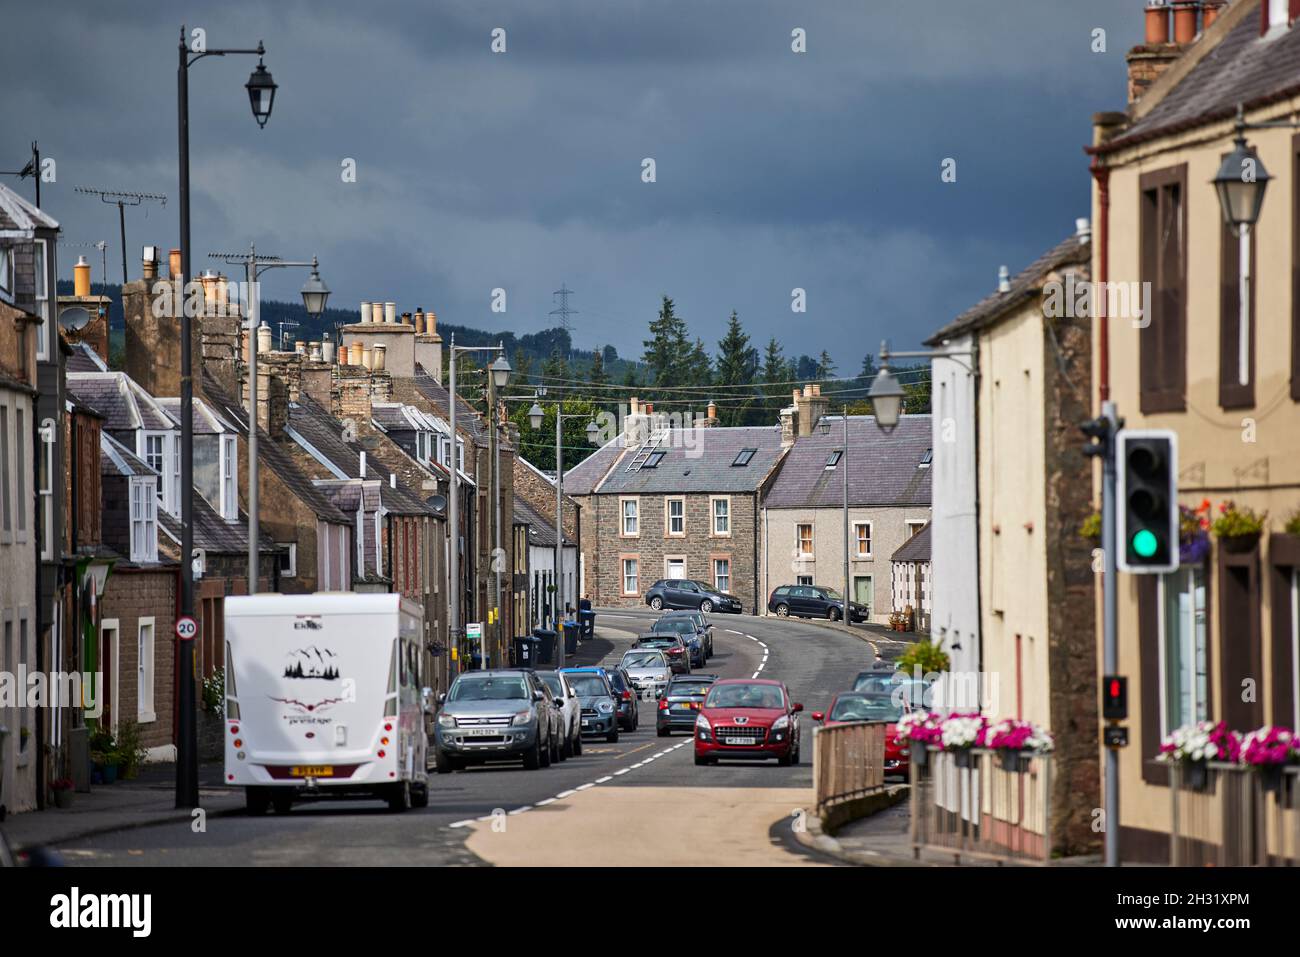 Lauder, en el escocés Boarders Escocia, A68 High Street pensó que el pueblo establecido en una restricción de velocidad de 20 mph, el coche rojo va lento, Foto de stock